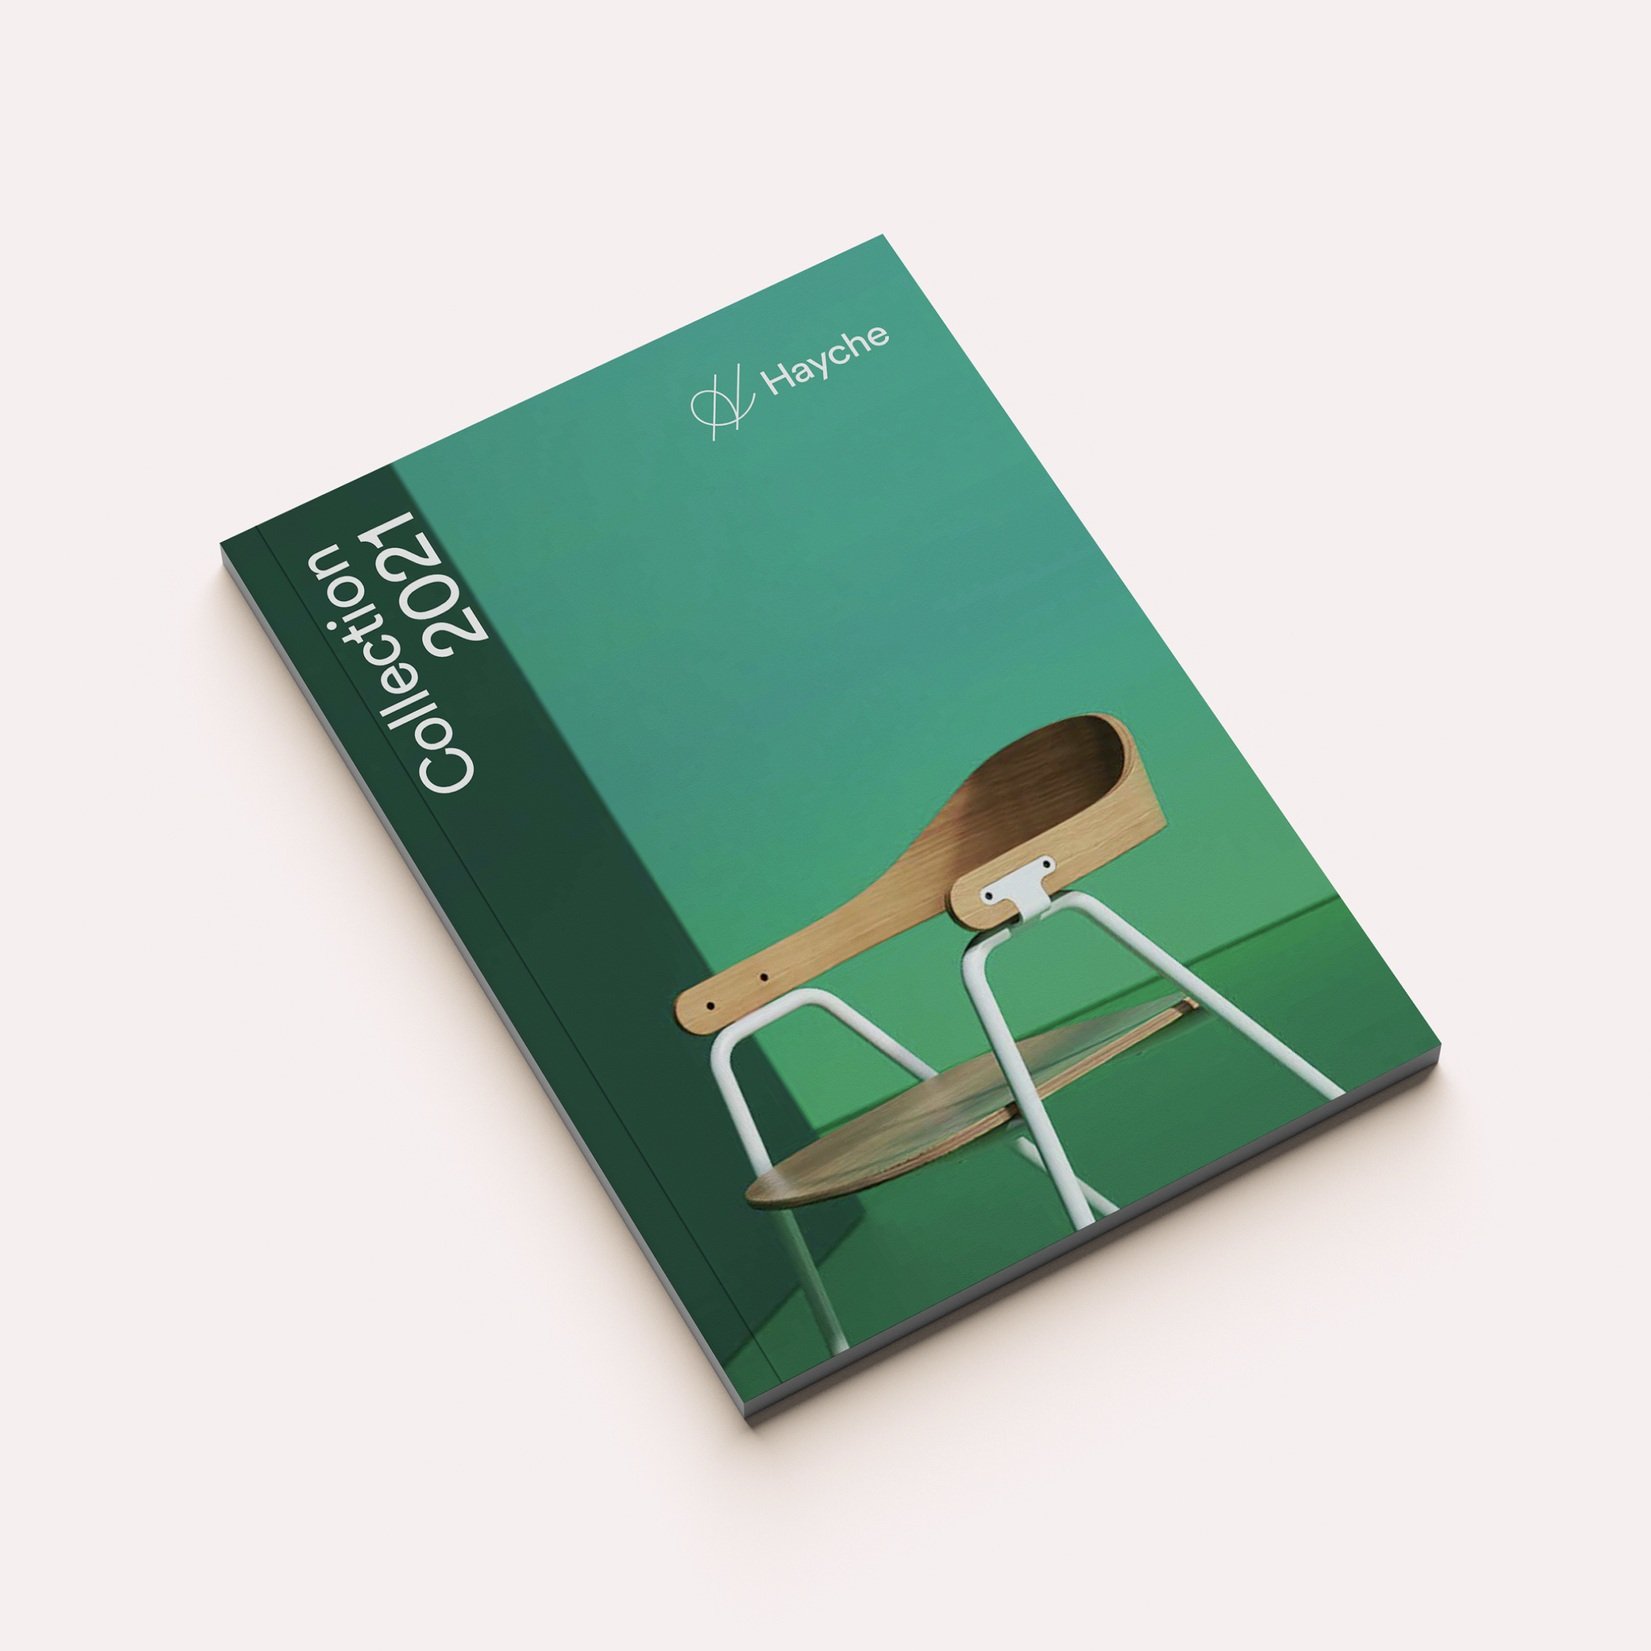 Freelance-graphic-designer-Hayche brochure design